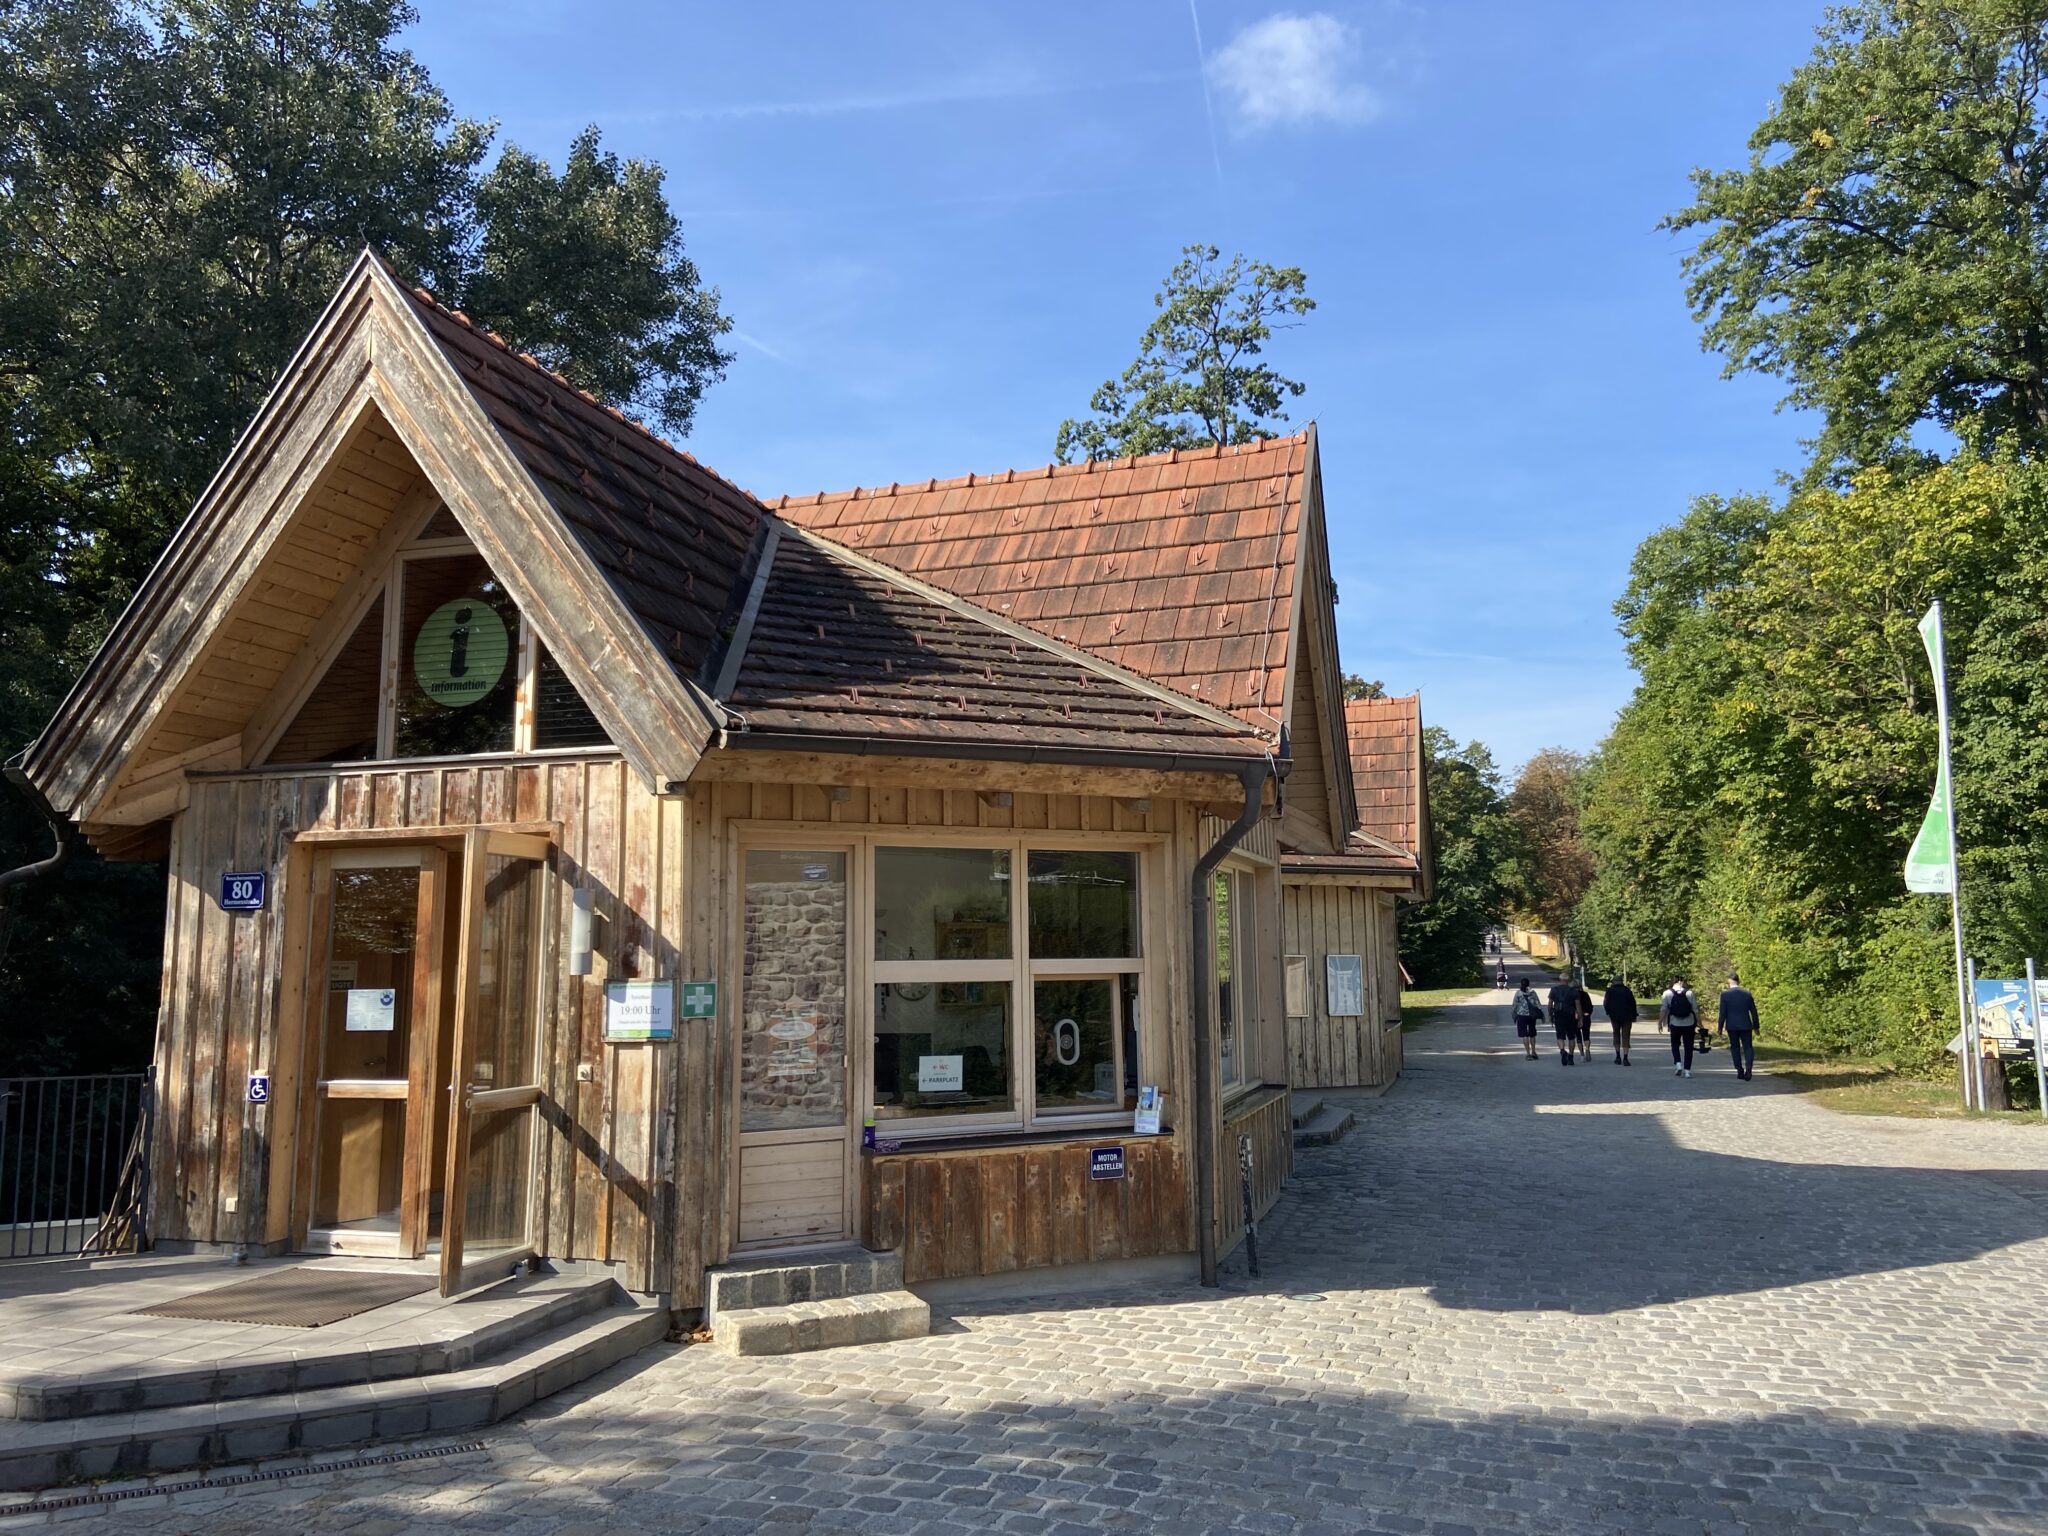 Lainzer Tiergarten- Lainzer Tor